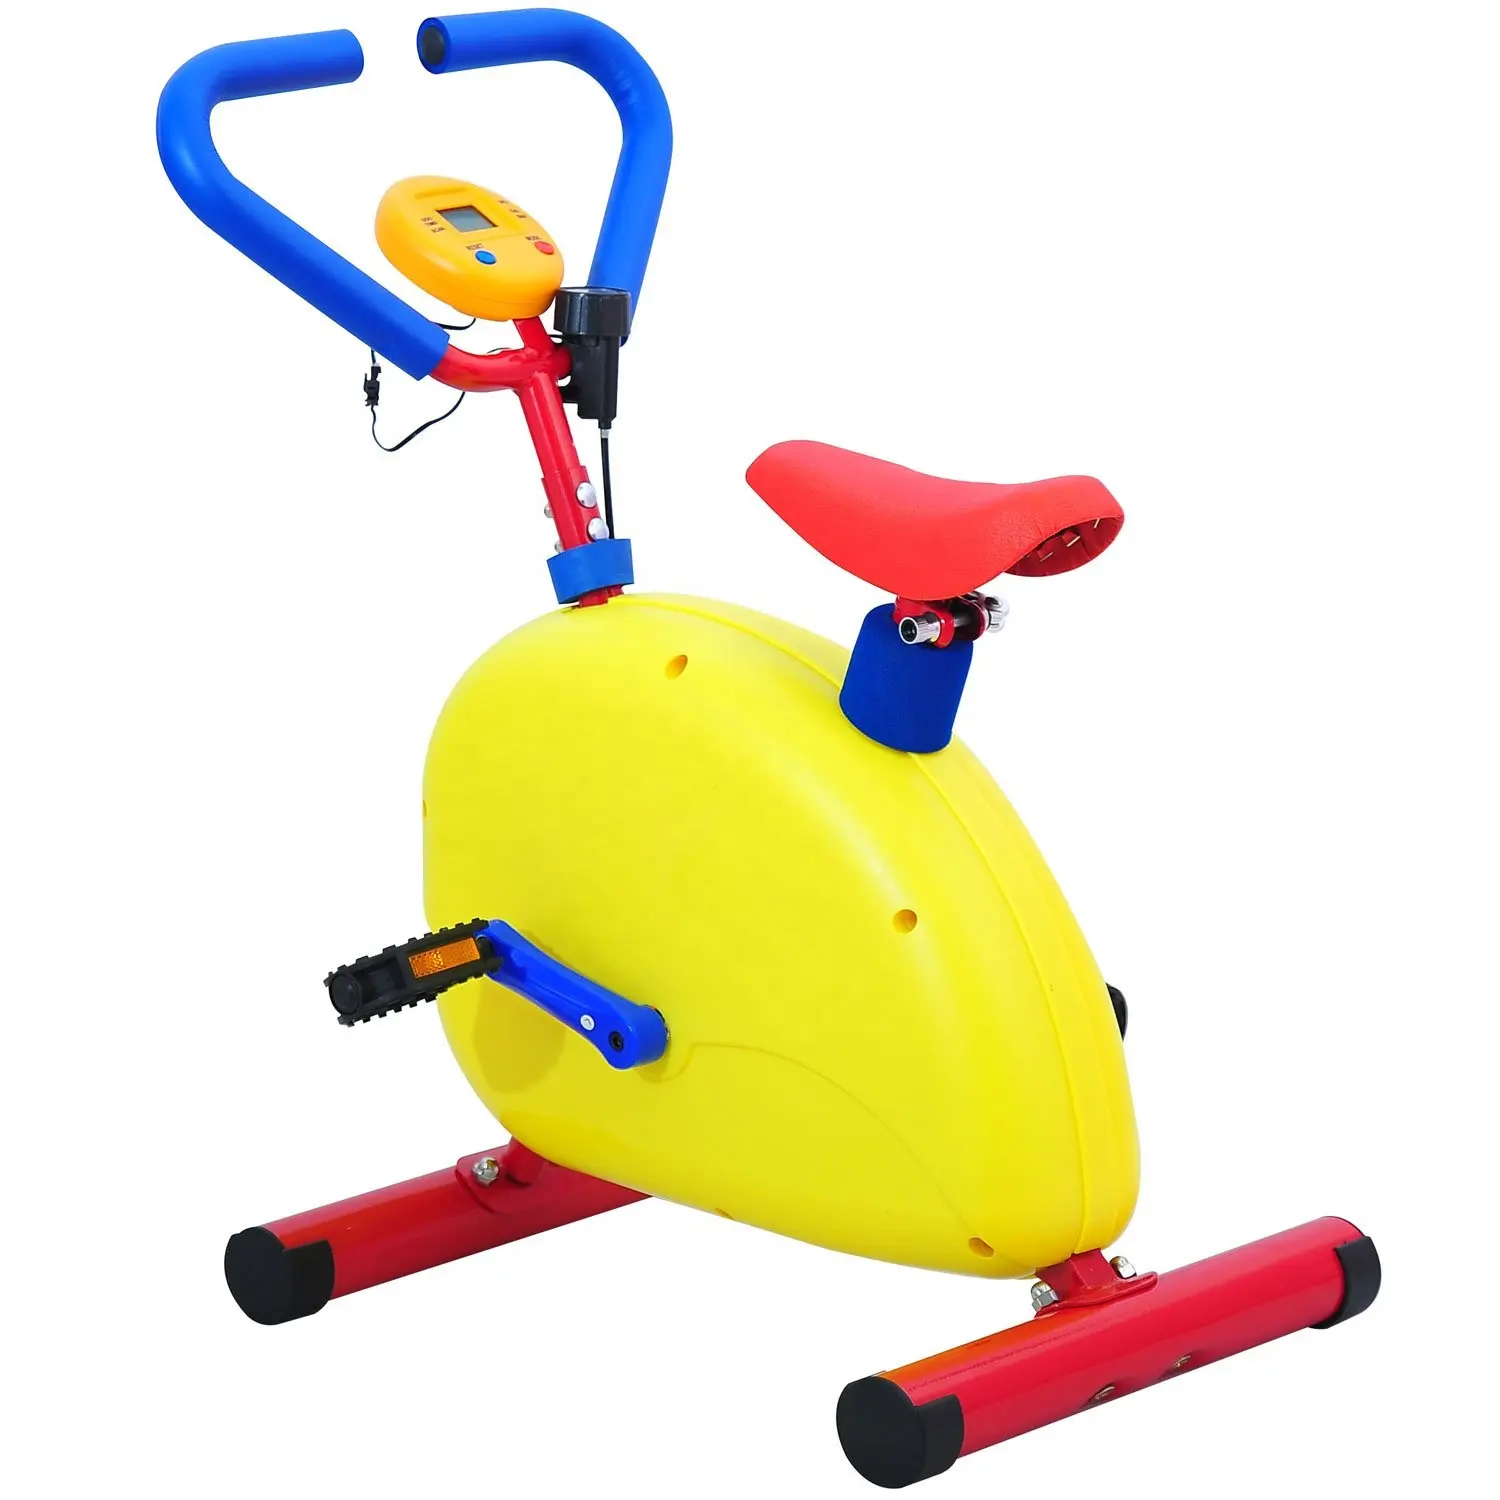 व्यायाम बाइक बच्चों के खिलौने फिटनेस सामान अन्य इनडोर खेल उत्पादों स्वास्थ्य देखभाल की आपूर्ति व्यायाम कसरत बच्चों को साइकिल